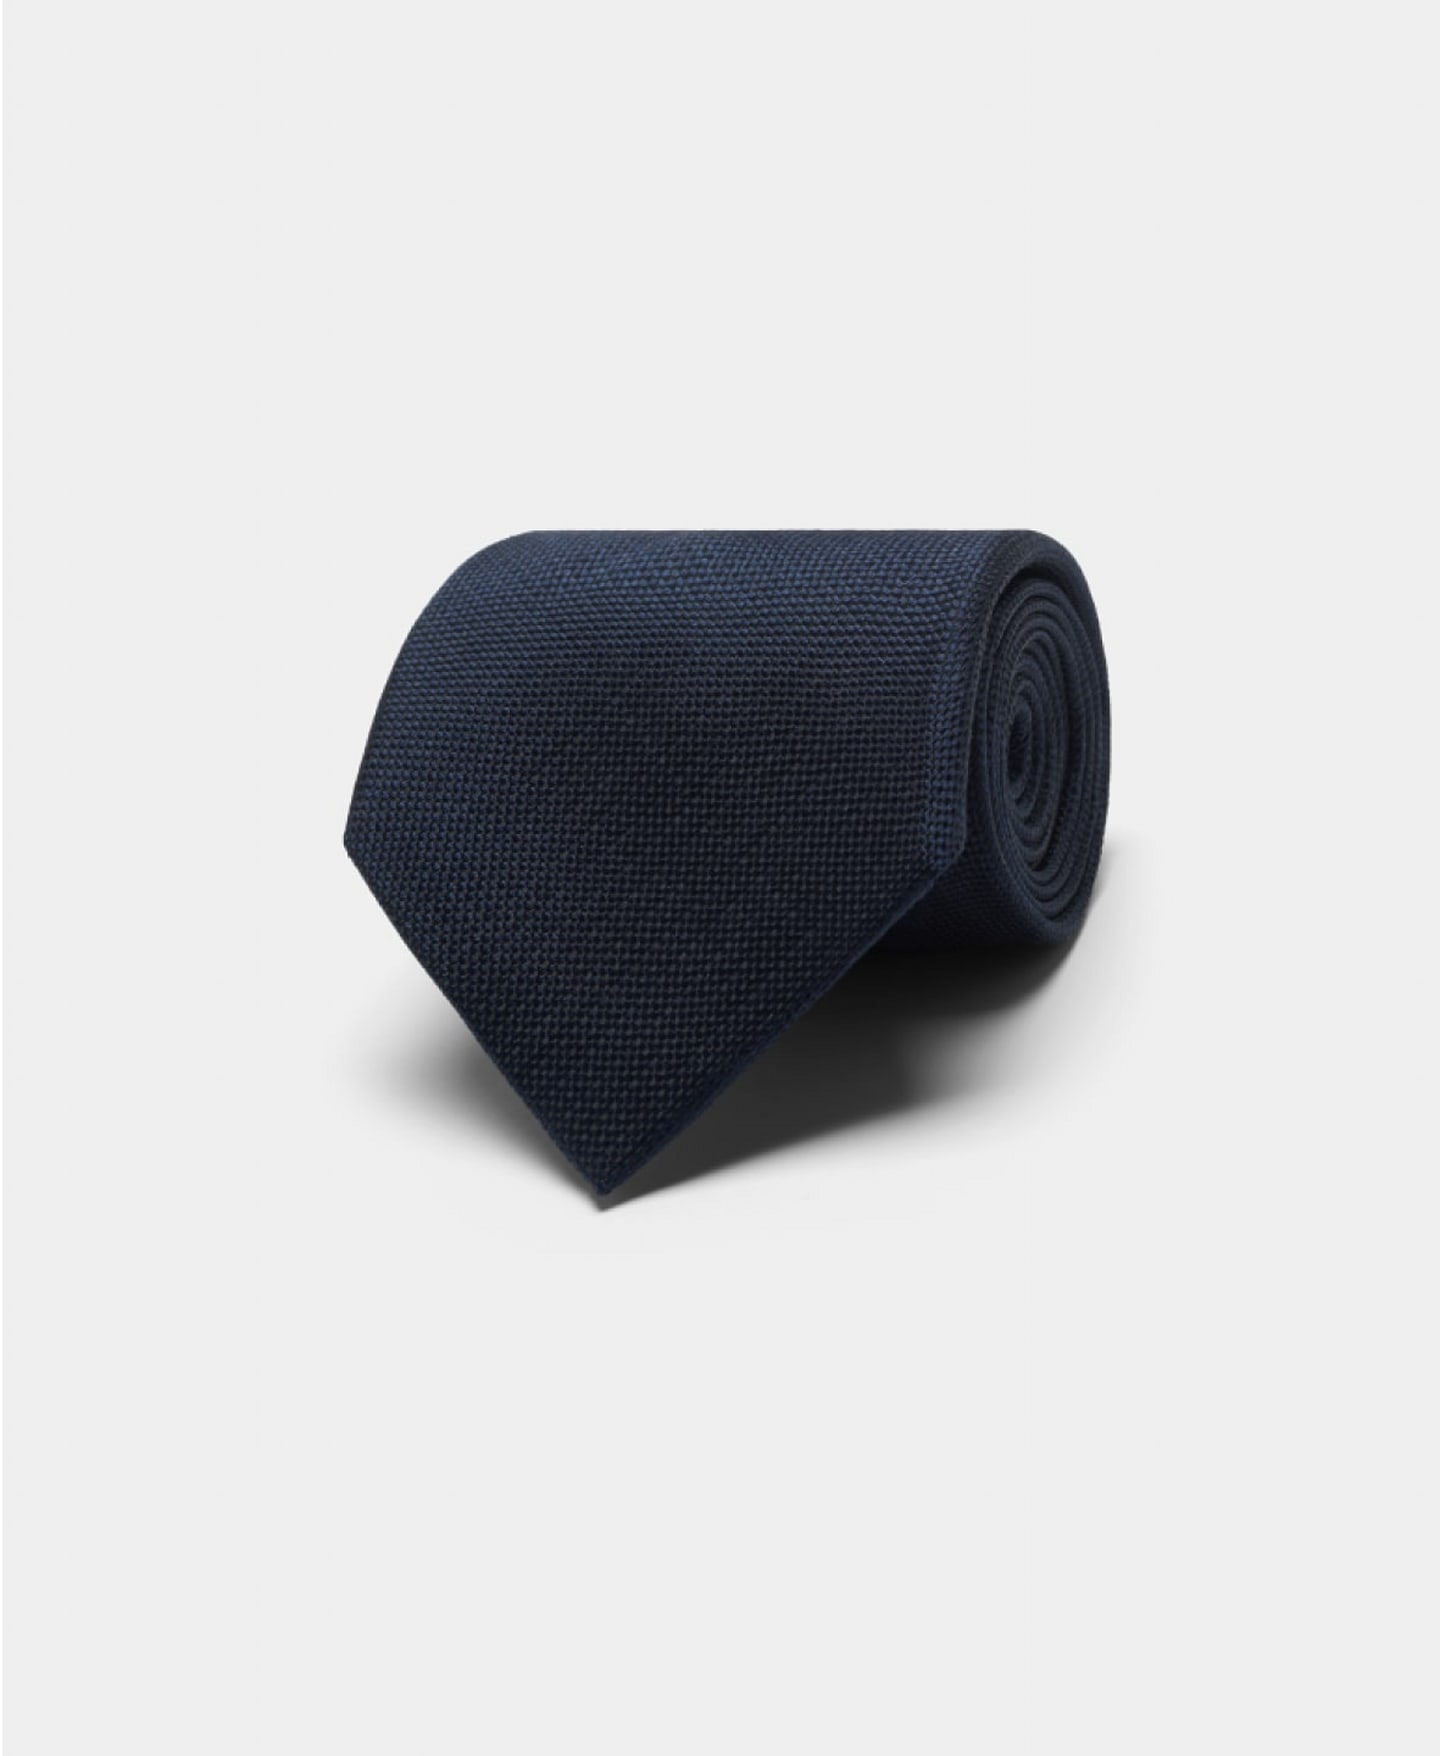 Krawatte in Navy aus reiner Seide.